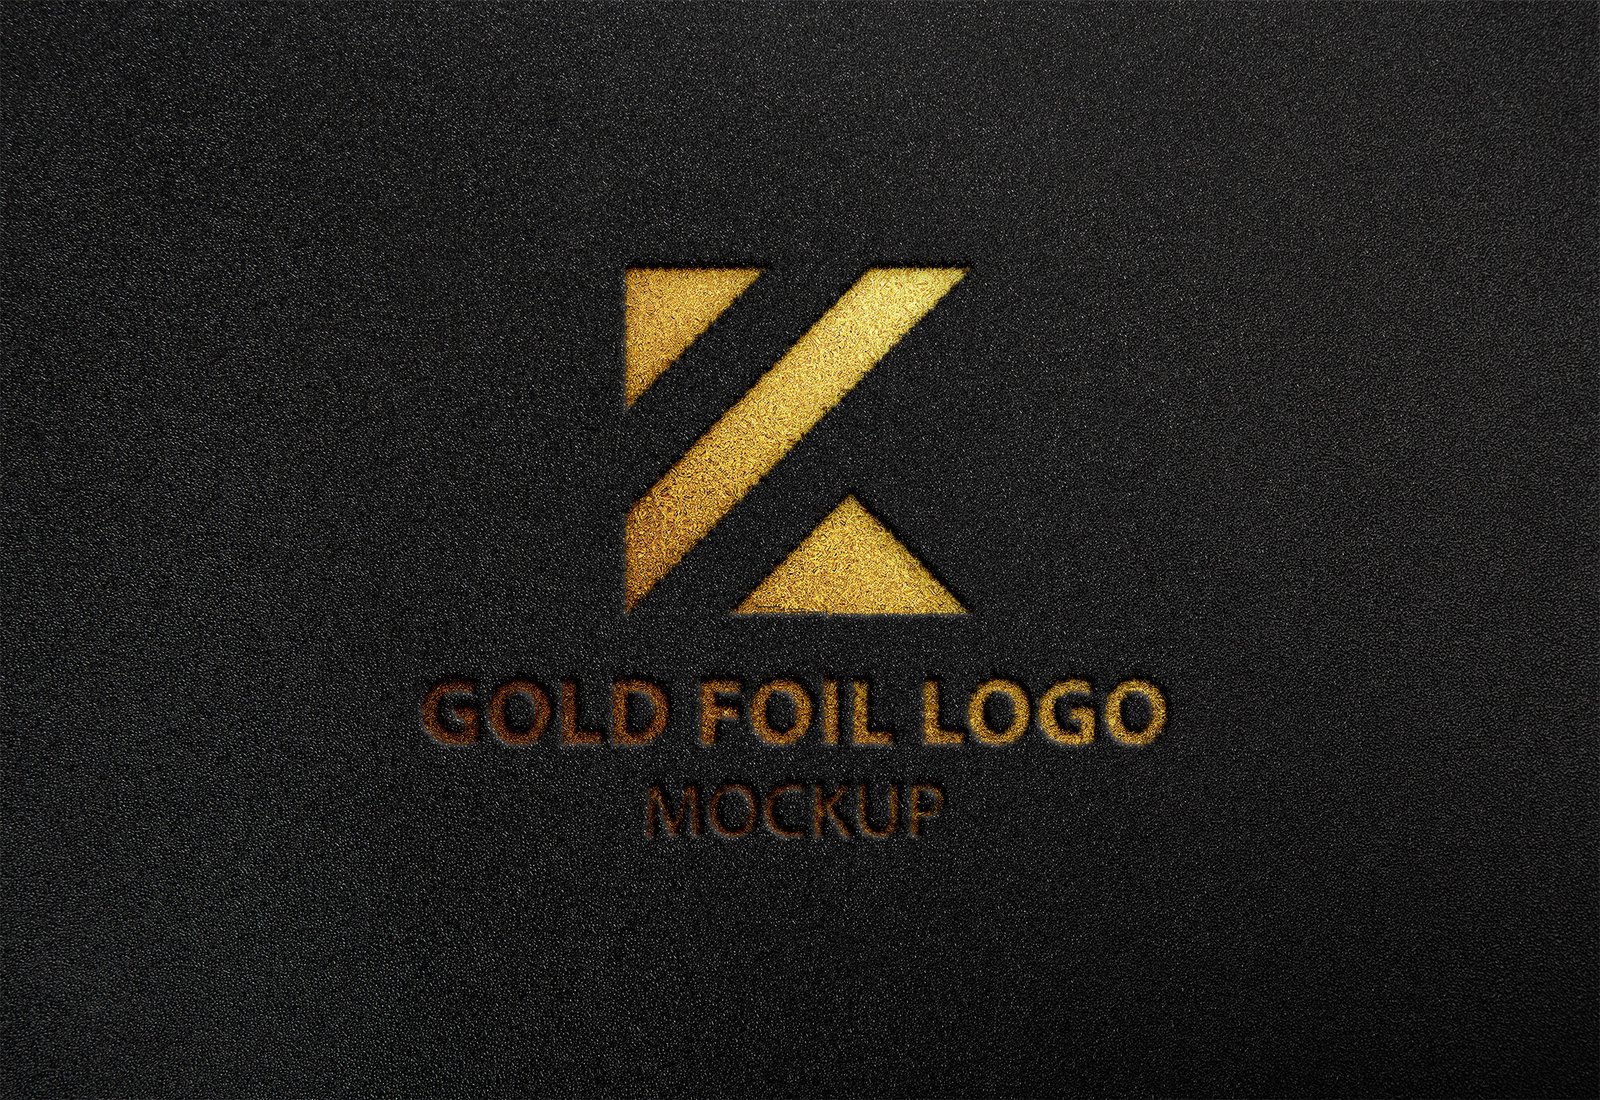 Download Free Gold Foil Logo Mockup Vol 2 Psd Template Mockup Den